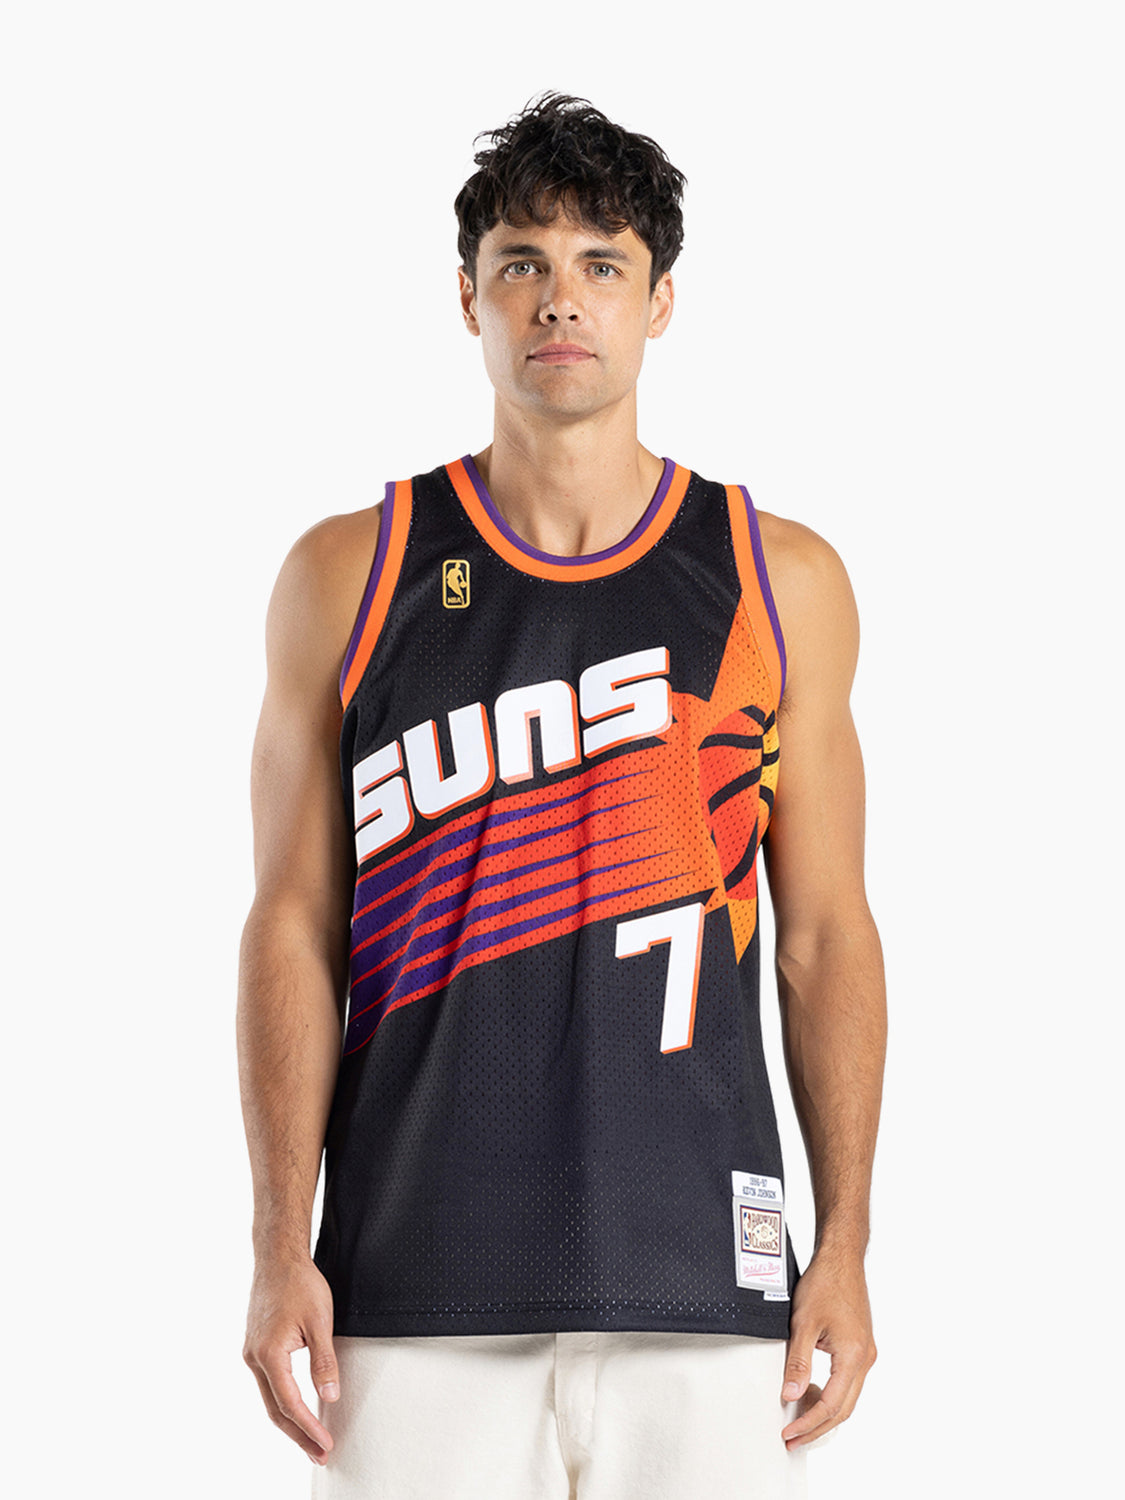 Mitchell & Ness NBA Swingman Jersey Phoenix Suns Alternate Kevin